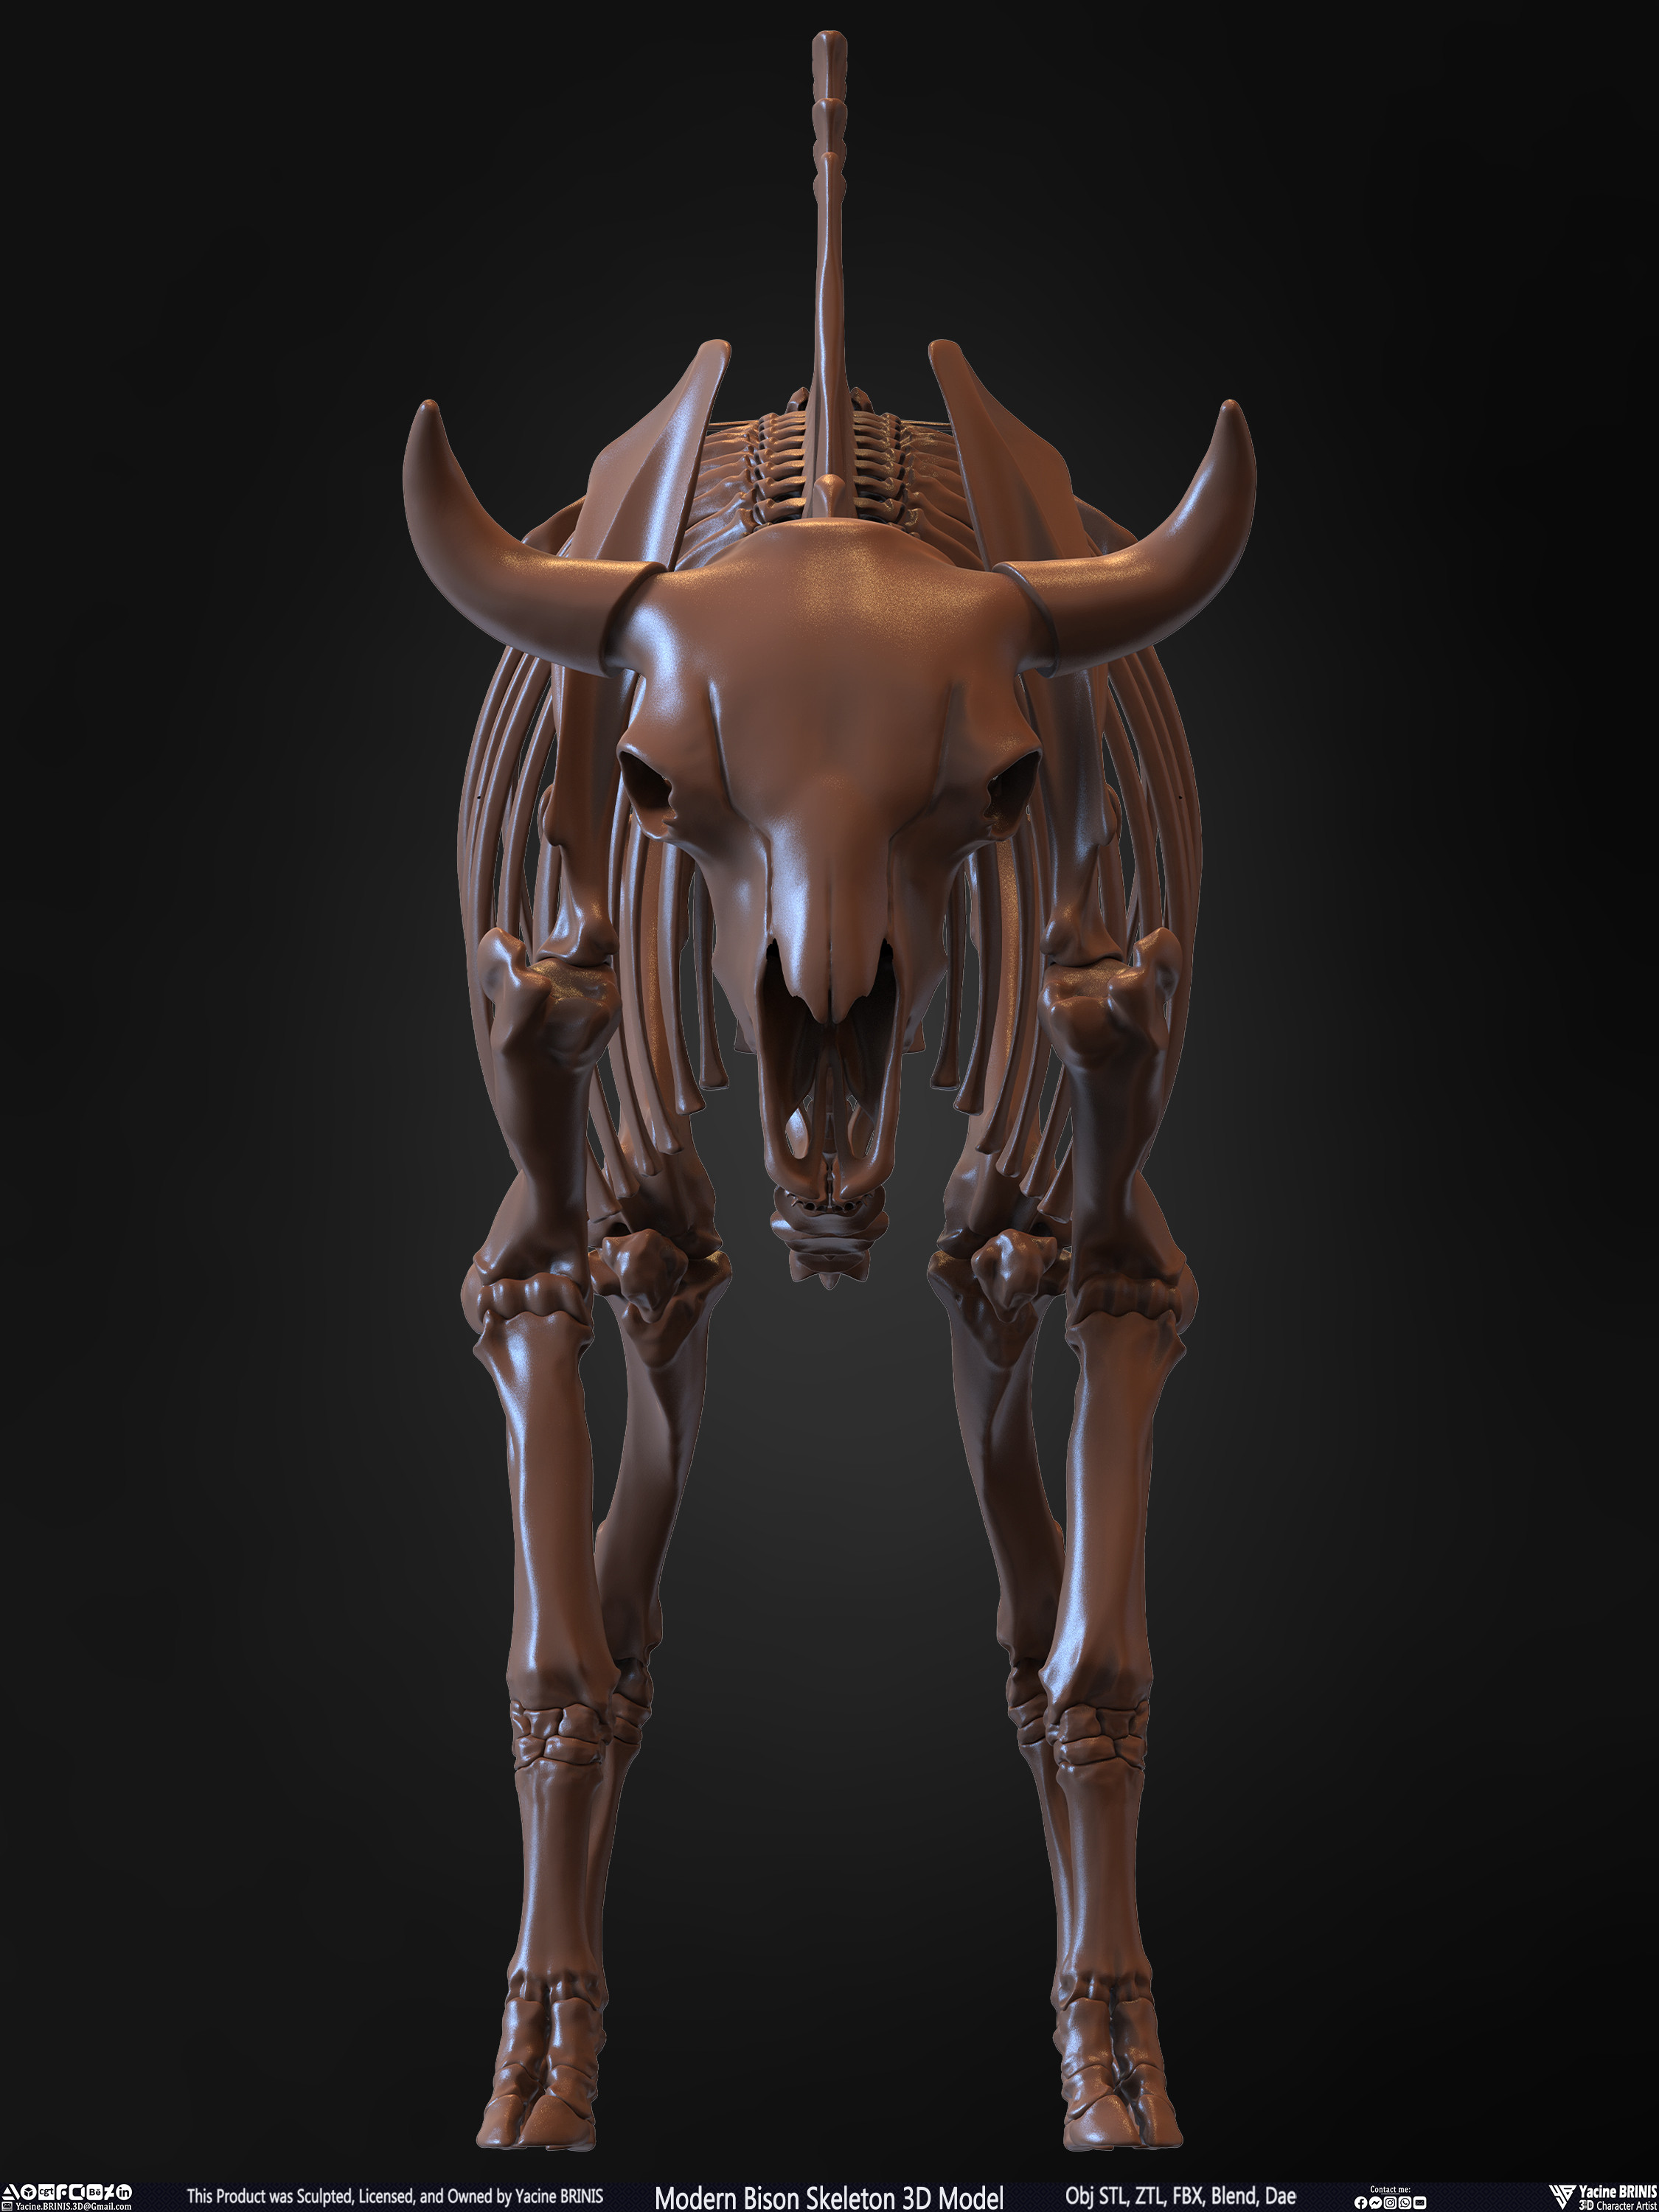 Modern Bison Skeleton 3D Model Sculpted by Yacine BRINIS Set 009